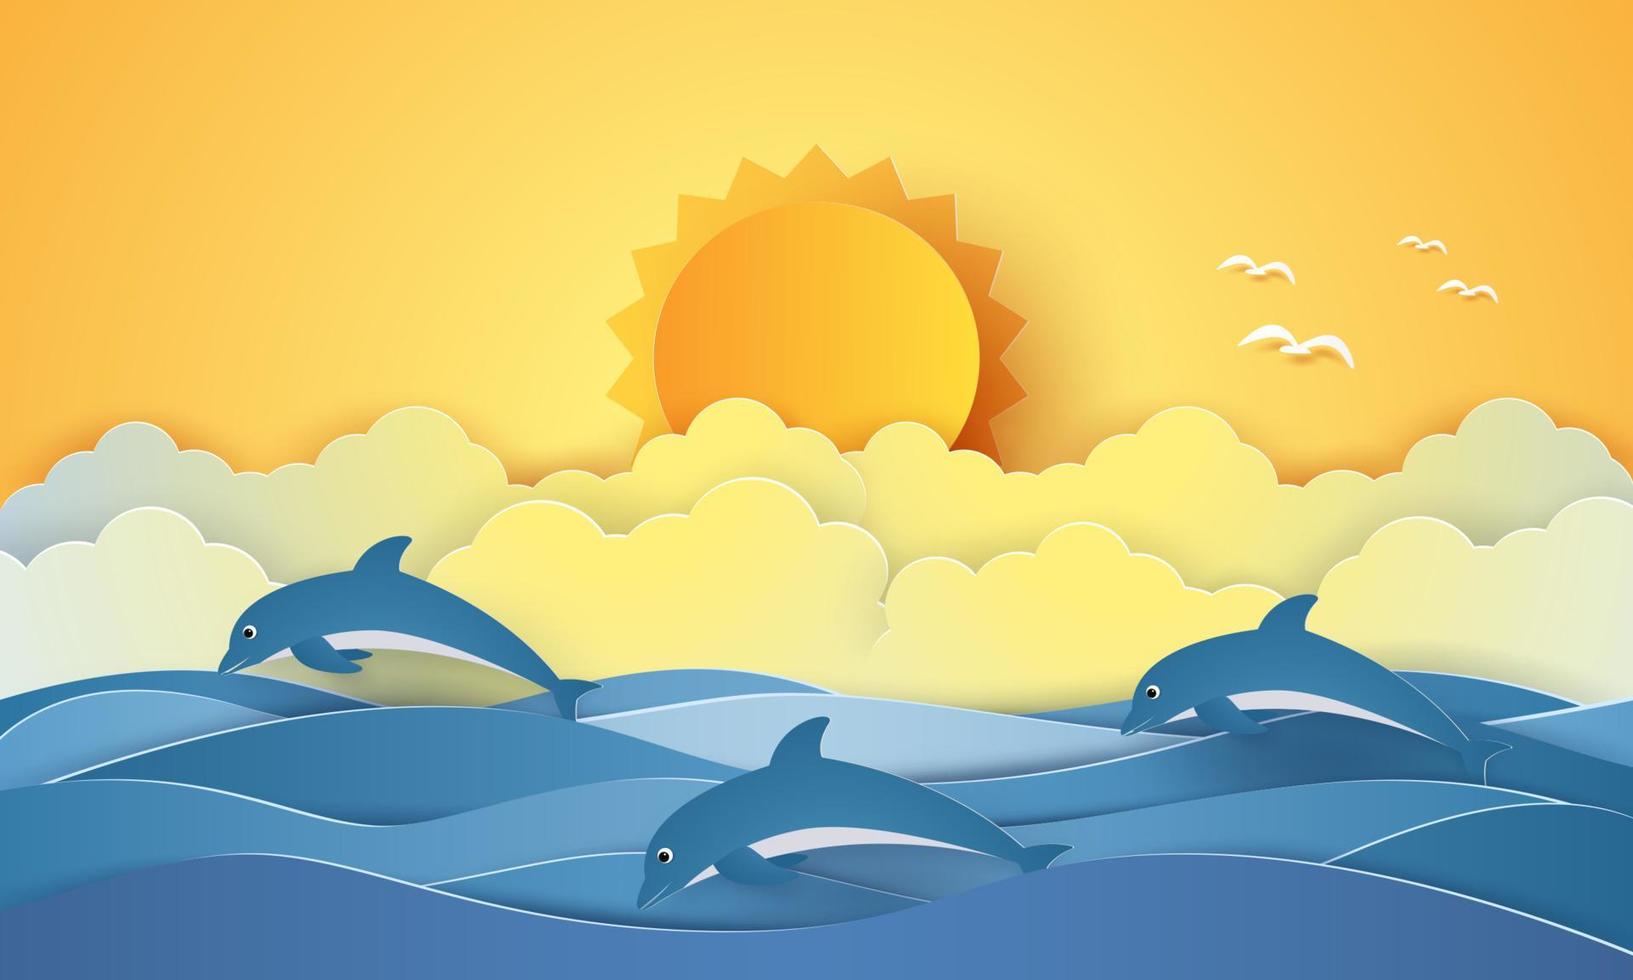 sommartid, hav med delfiner och sol, papper konststil vektor